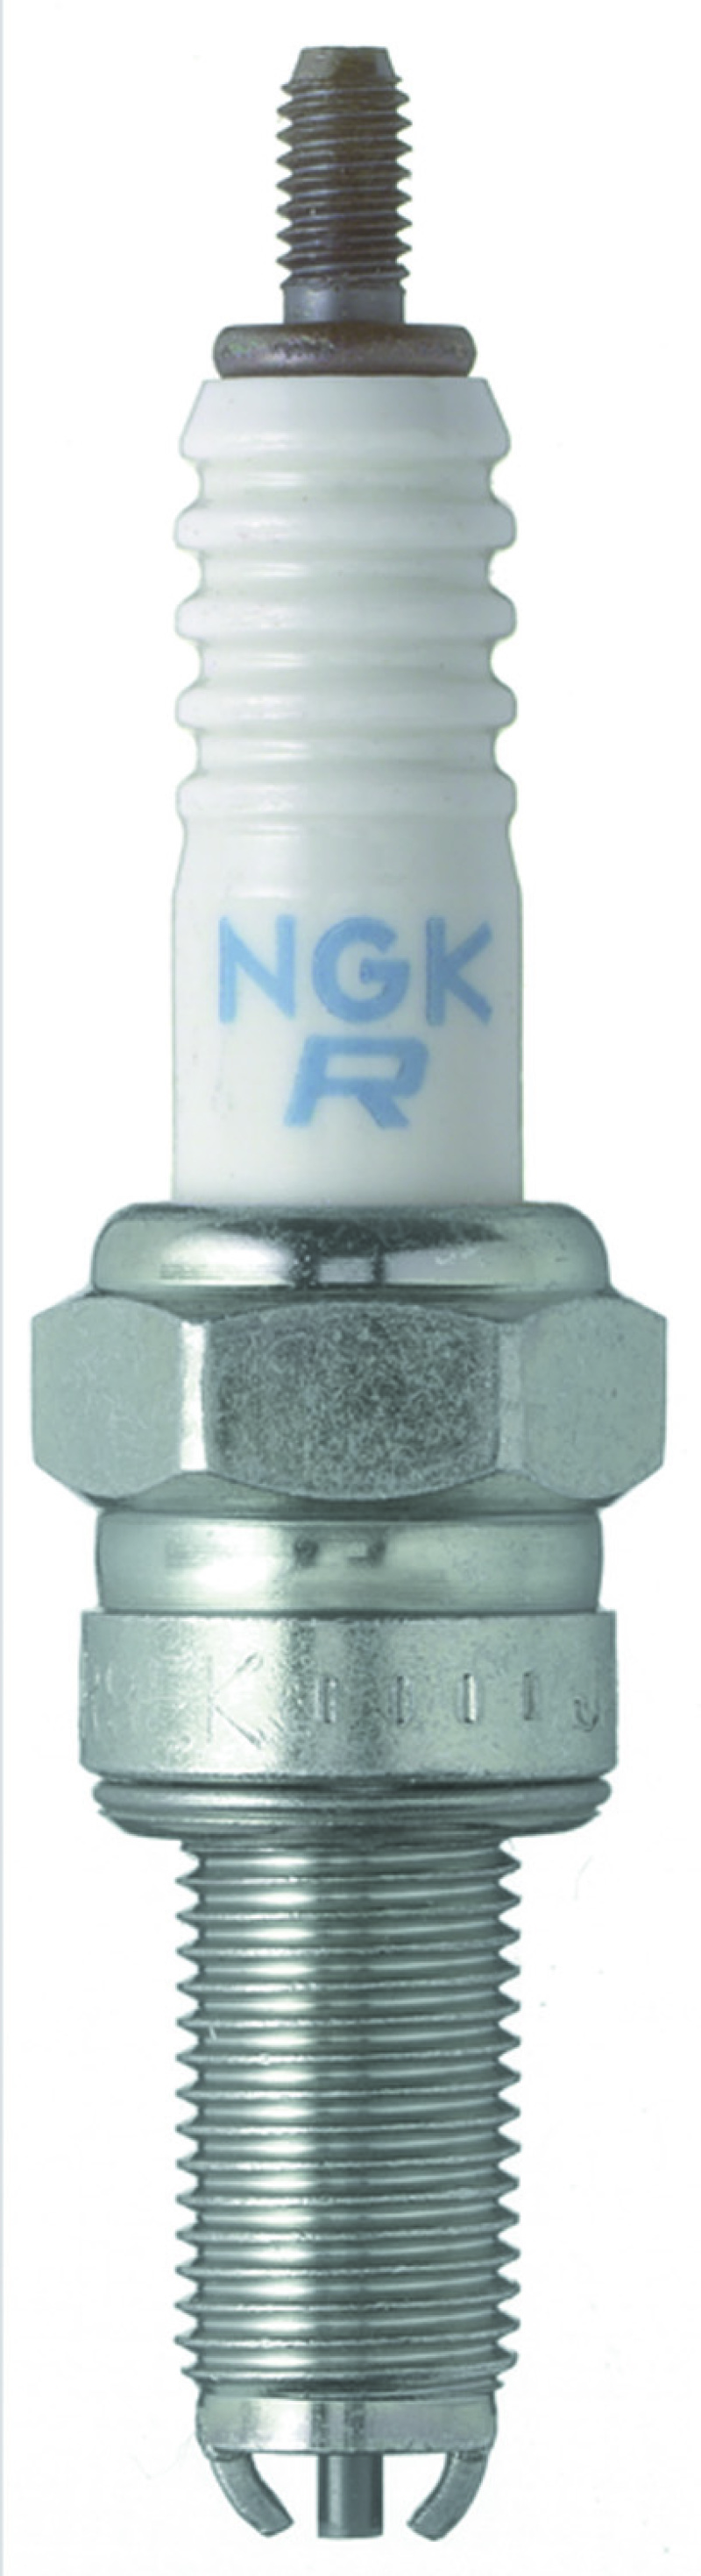 NGK Standard Spark Plug Box of 10 (CR7EK) - 7546